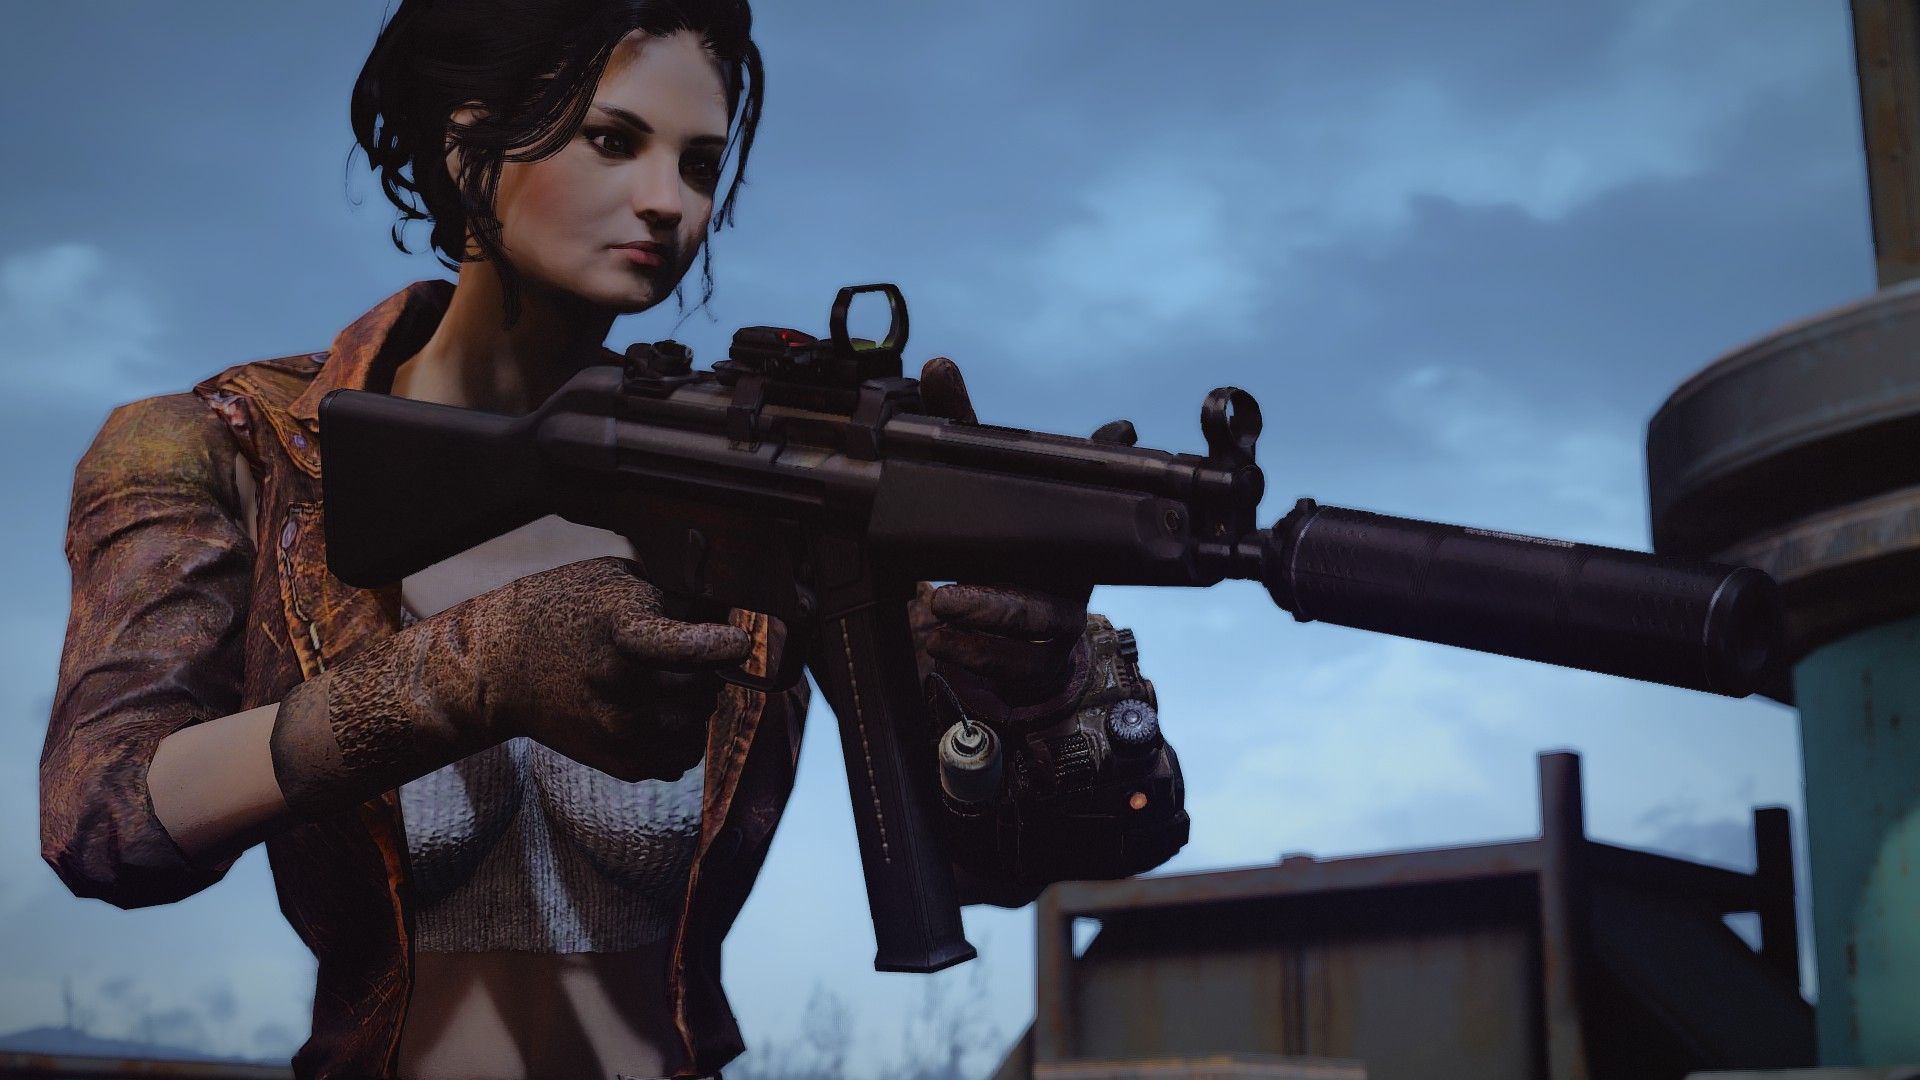 Tactical Aesthetics MP5 Submachine Gun at Fallout 4 Nexus